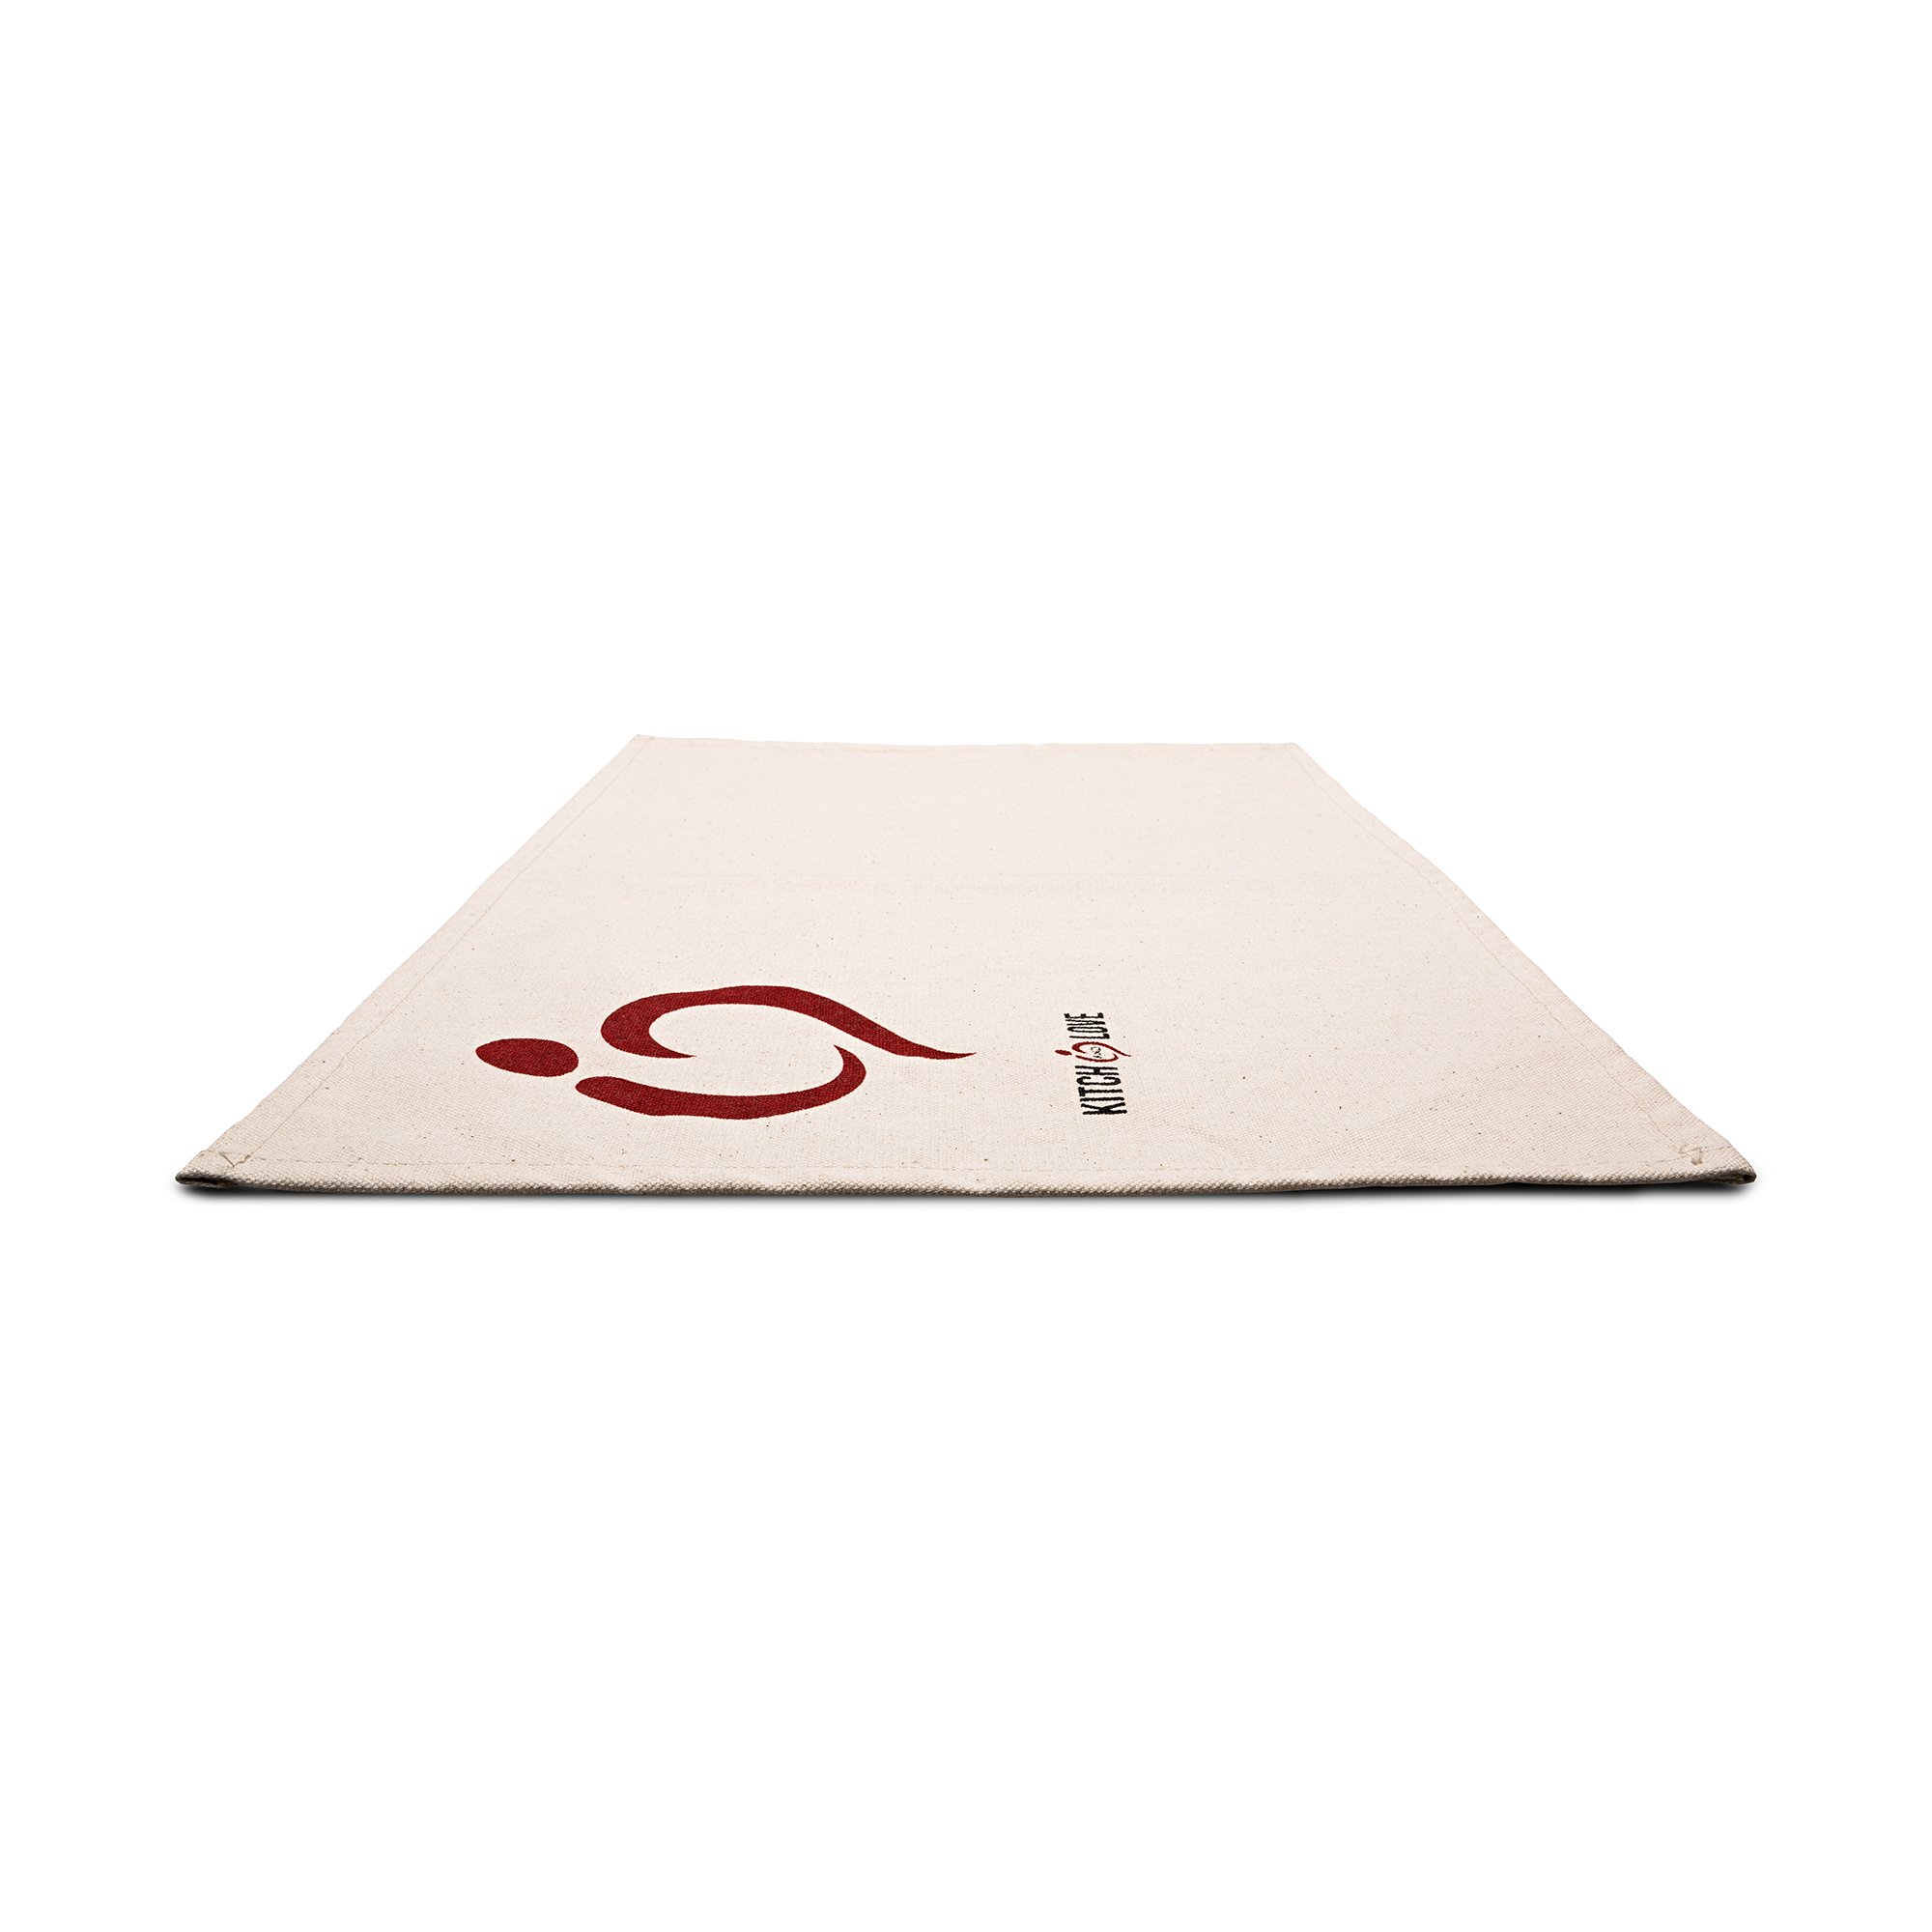 Linge de table en canvas avec logo